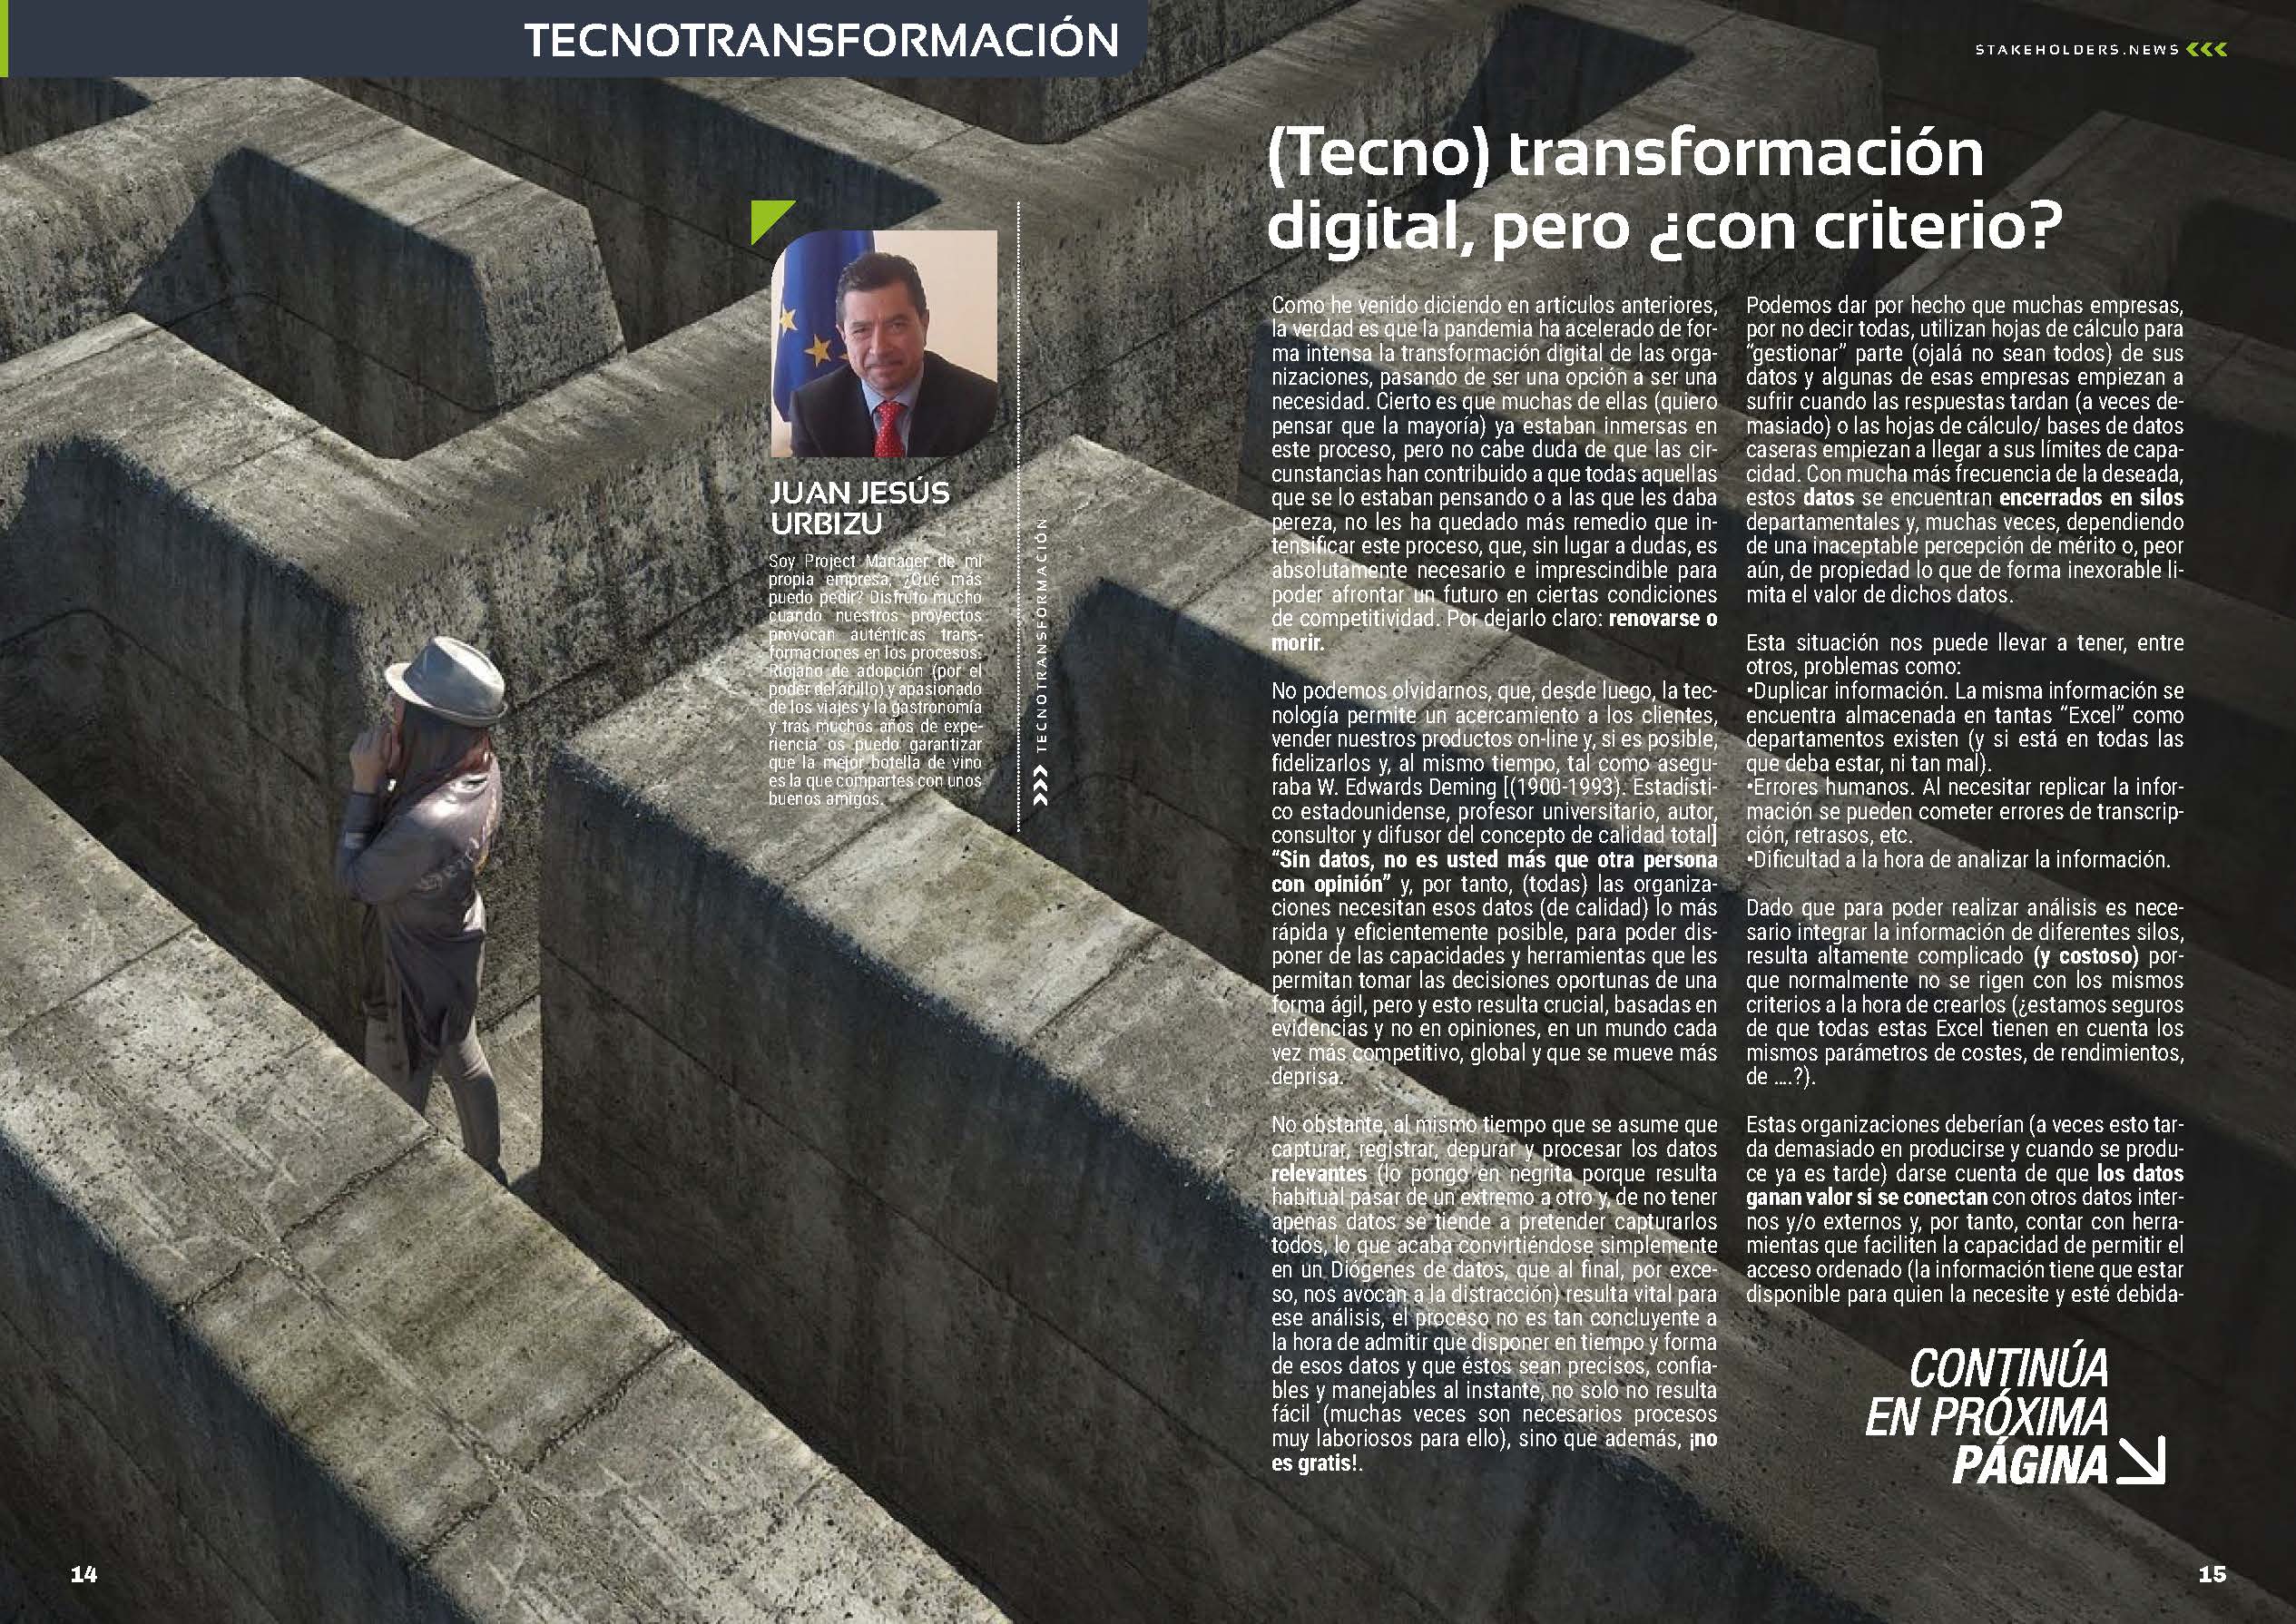 (Tecno) transformación digital, pero ¿con criterio? Articulo de Juanje Urbizu en la Sección TecnoTransformación de la Revista Stakeholders.news